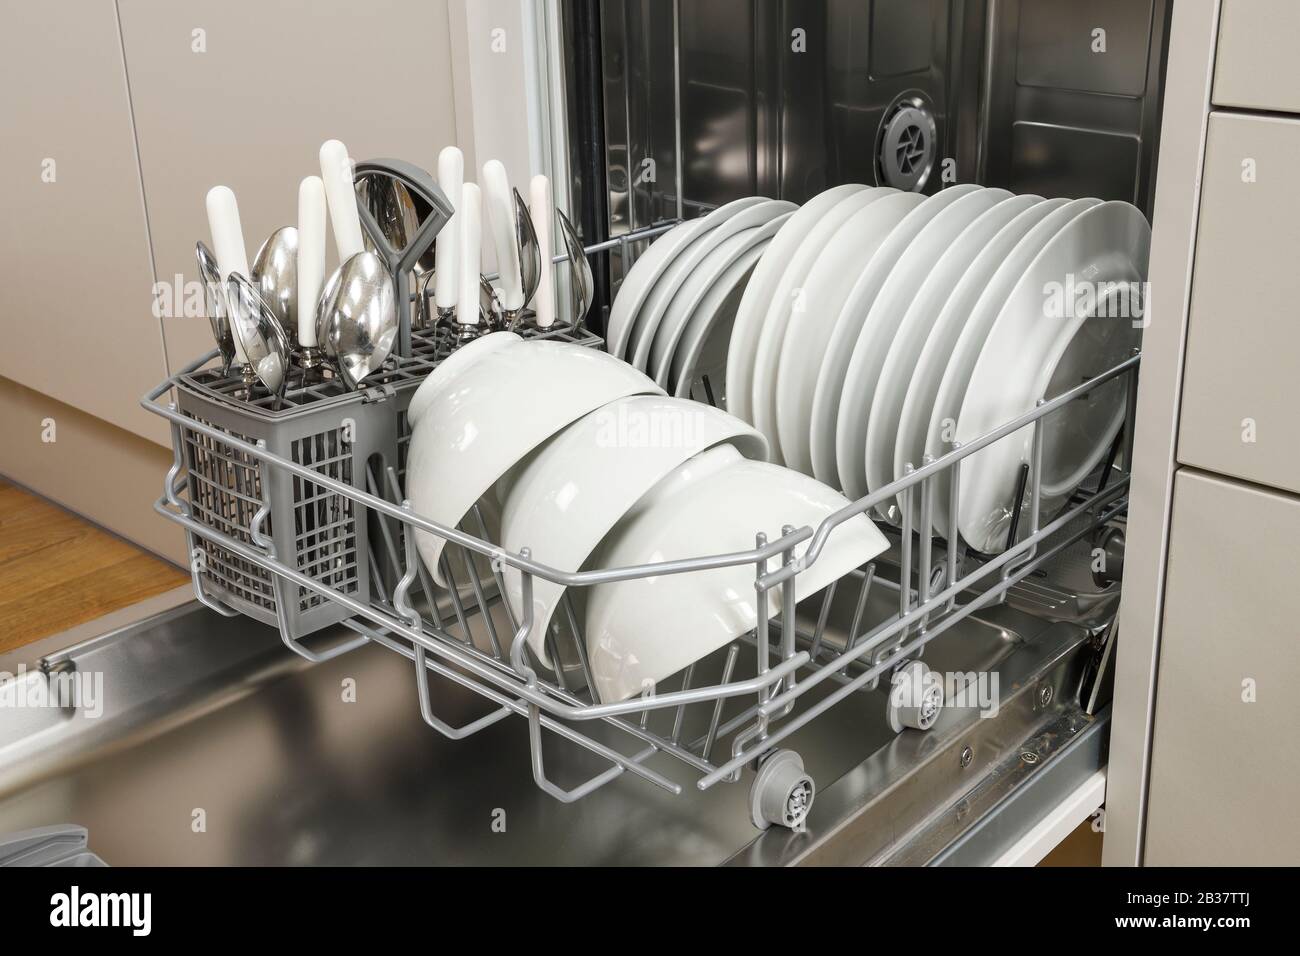 Un lave-vaisselle domestique compact avec de la vaisselle blanche dans une cuisine moderne Banque D'Images